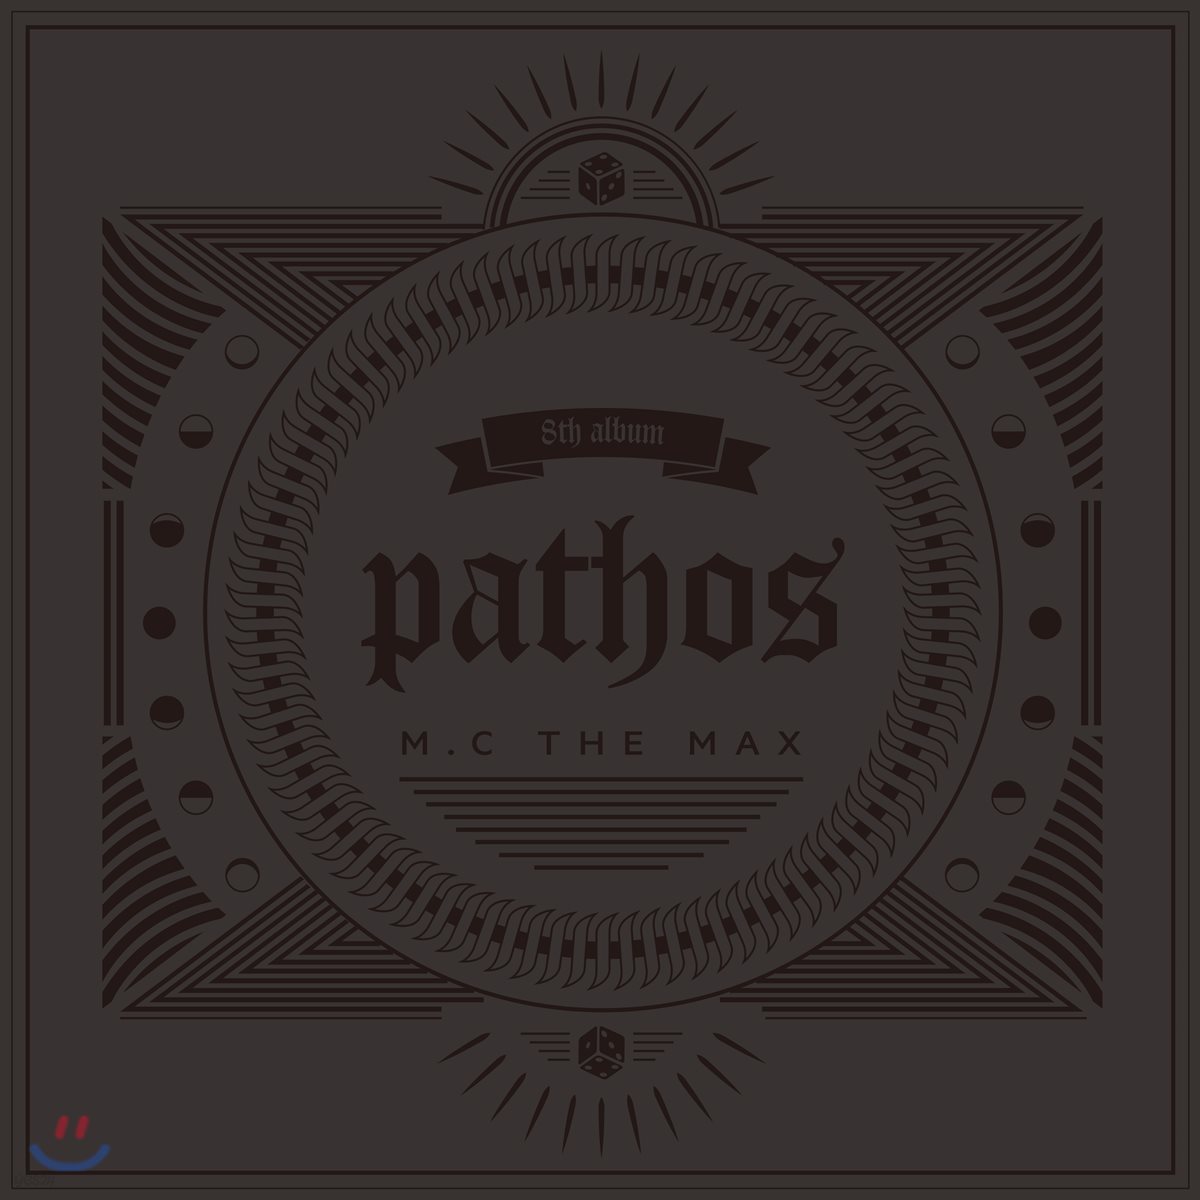 M.C the Max (엠씨더맥스) - 8집 pathos [ LP]